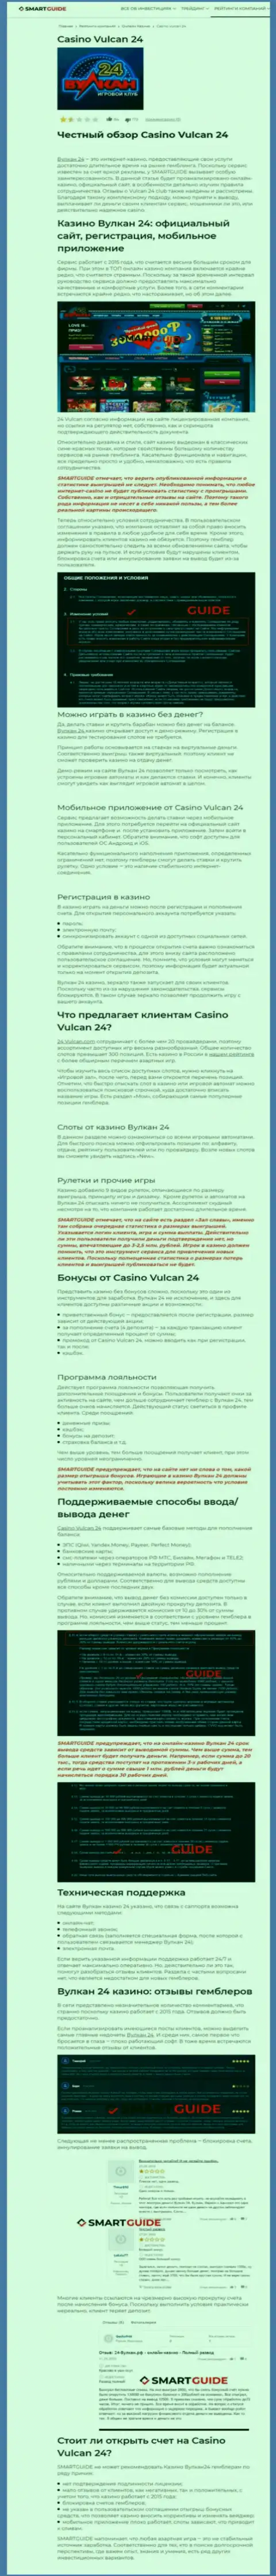 Wulkan24 - это компания, которая зарабатывает на сливе денежных вложений собственных реальных клиентов (обзор)